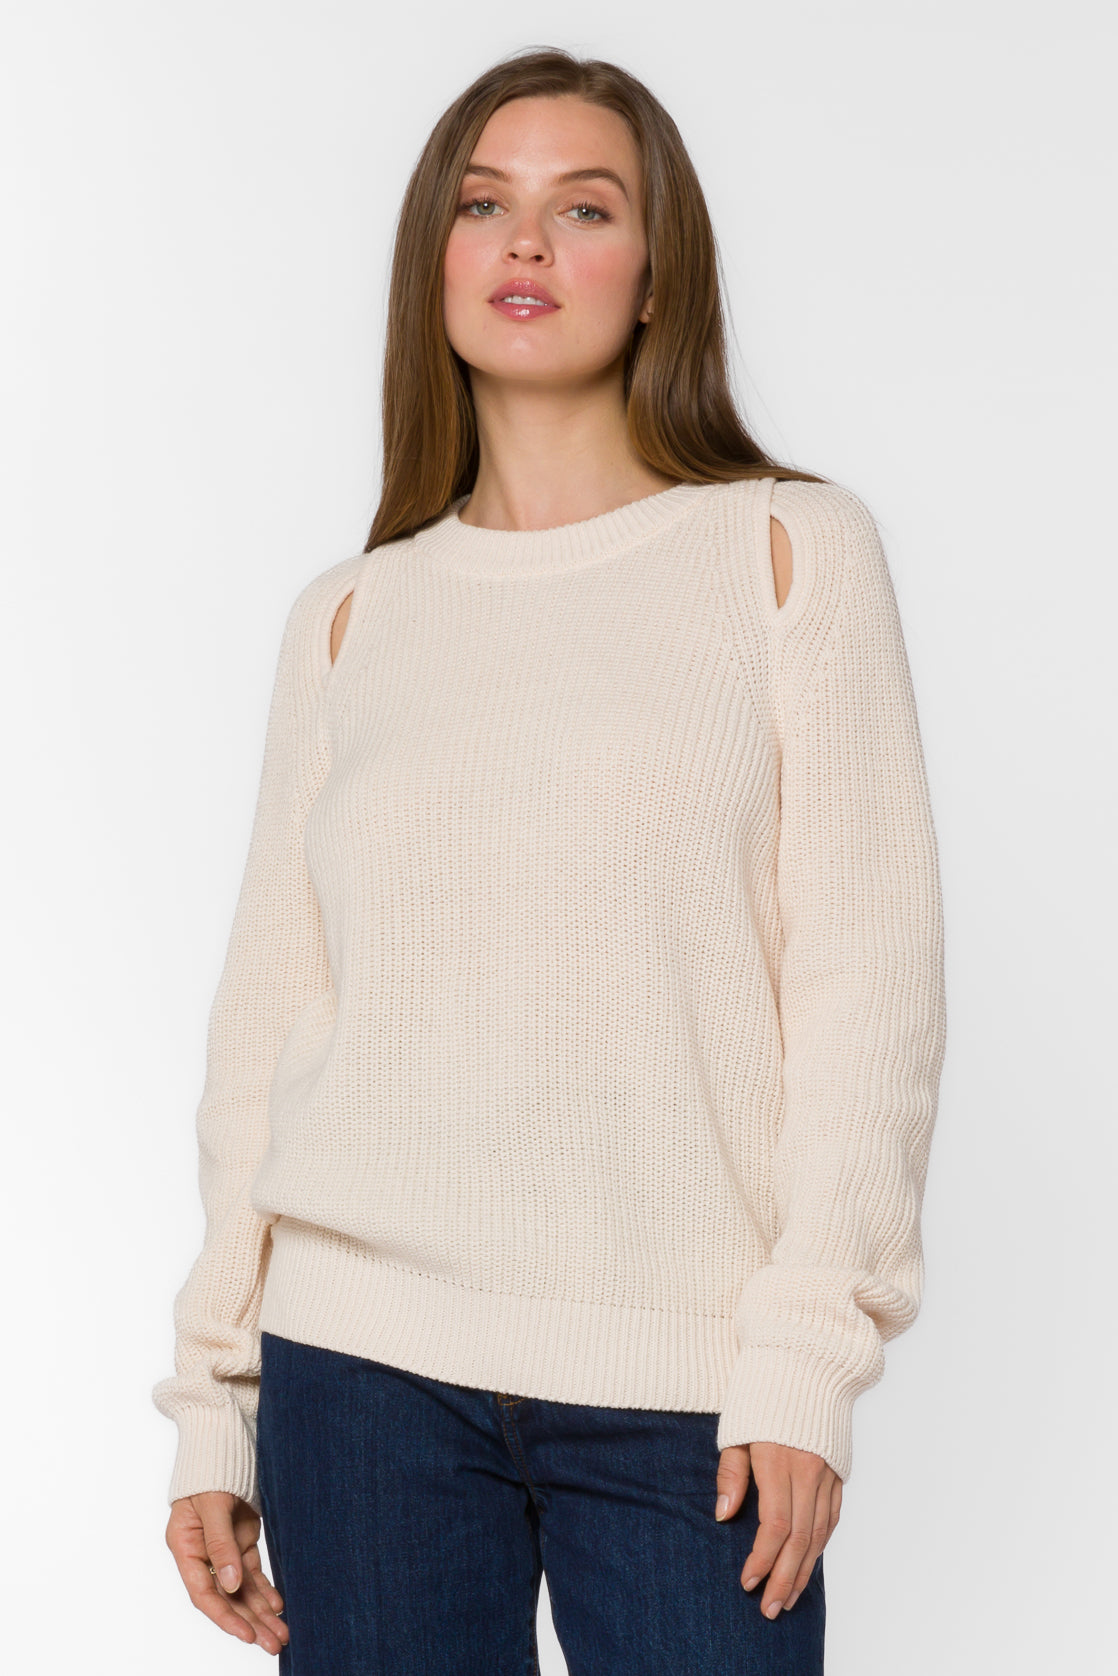 Roya Ivory Sweater - Sweaters - Velvet Heart Clothing